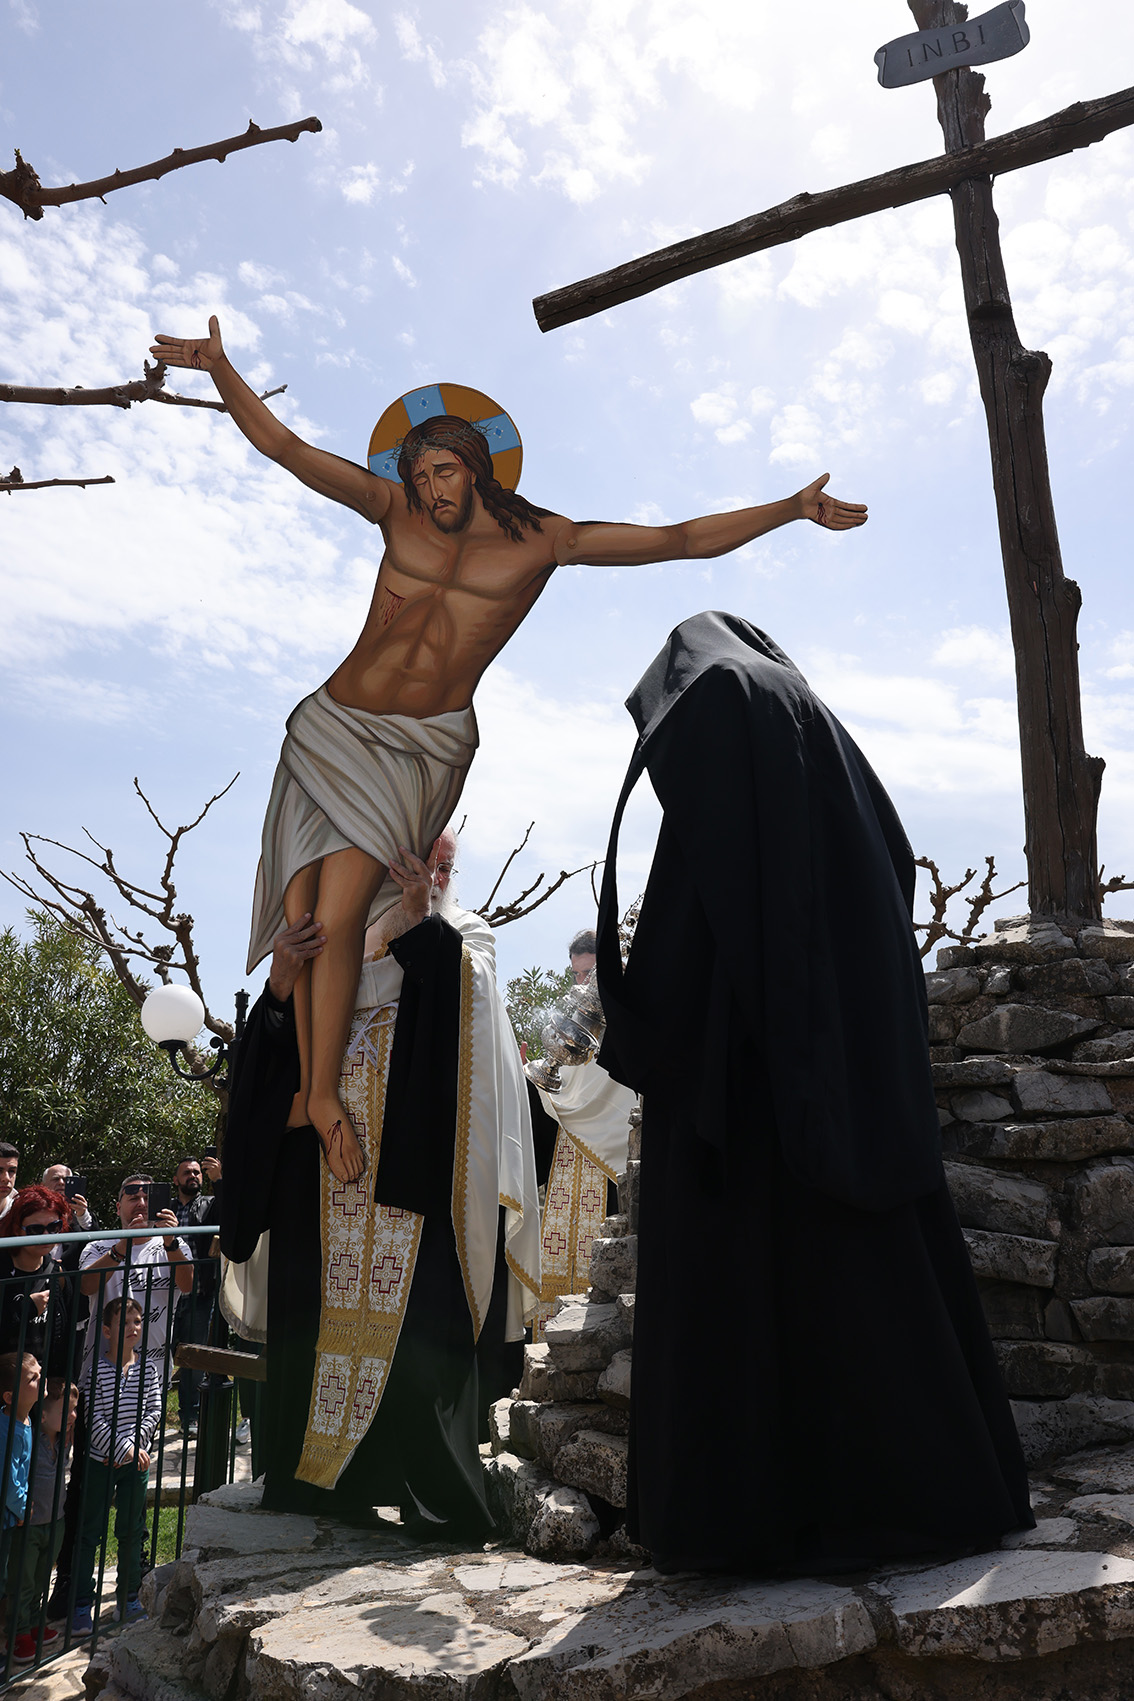 Πλήθος λαού στο Τρίκορφο για την αναπαράσταση των Παθών του Κυρίου (Φωτορεπορτάζ)